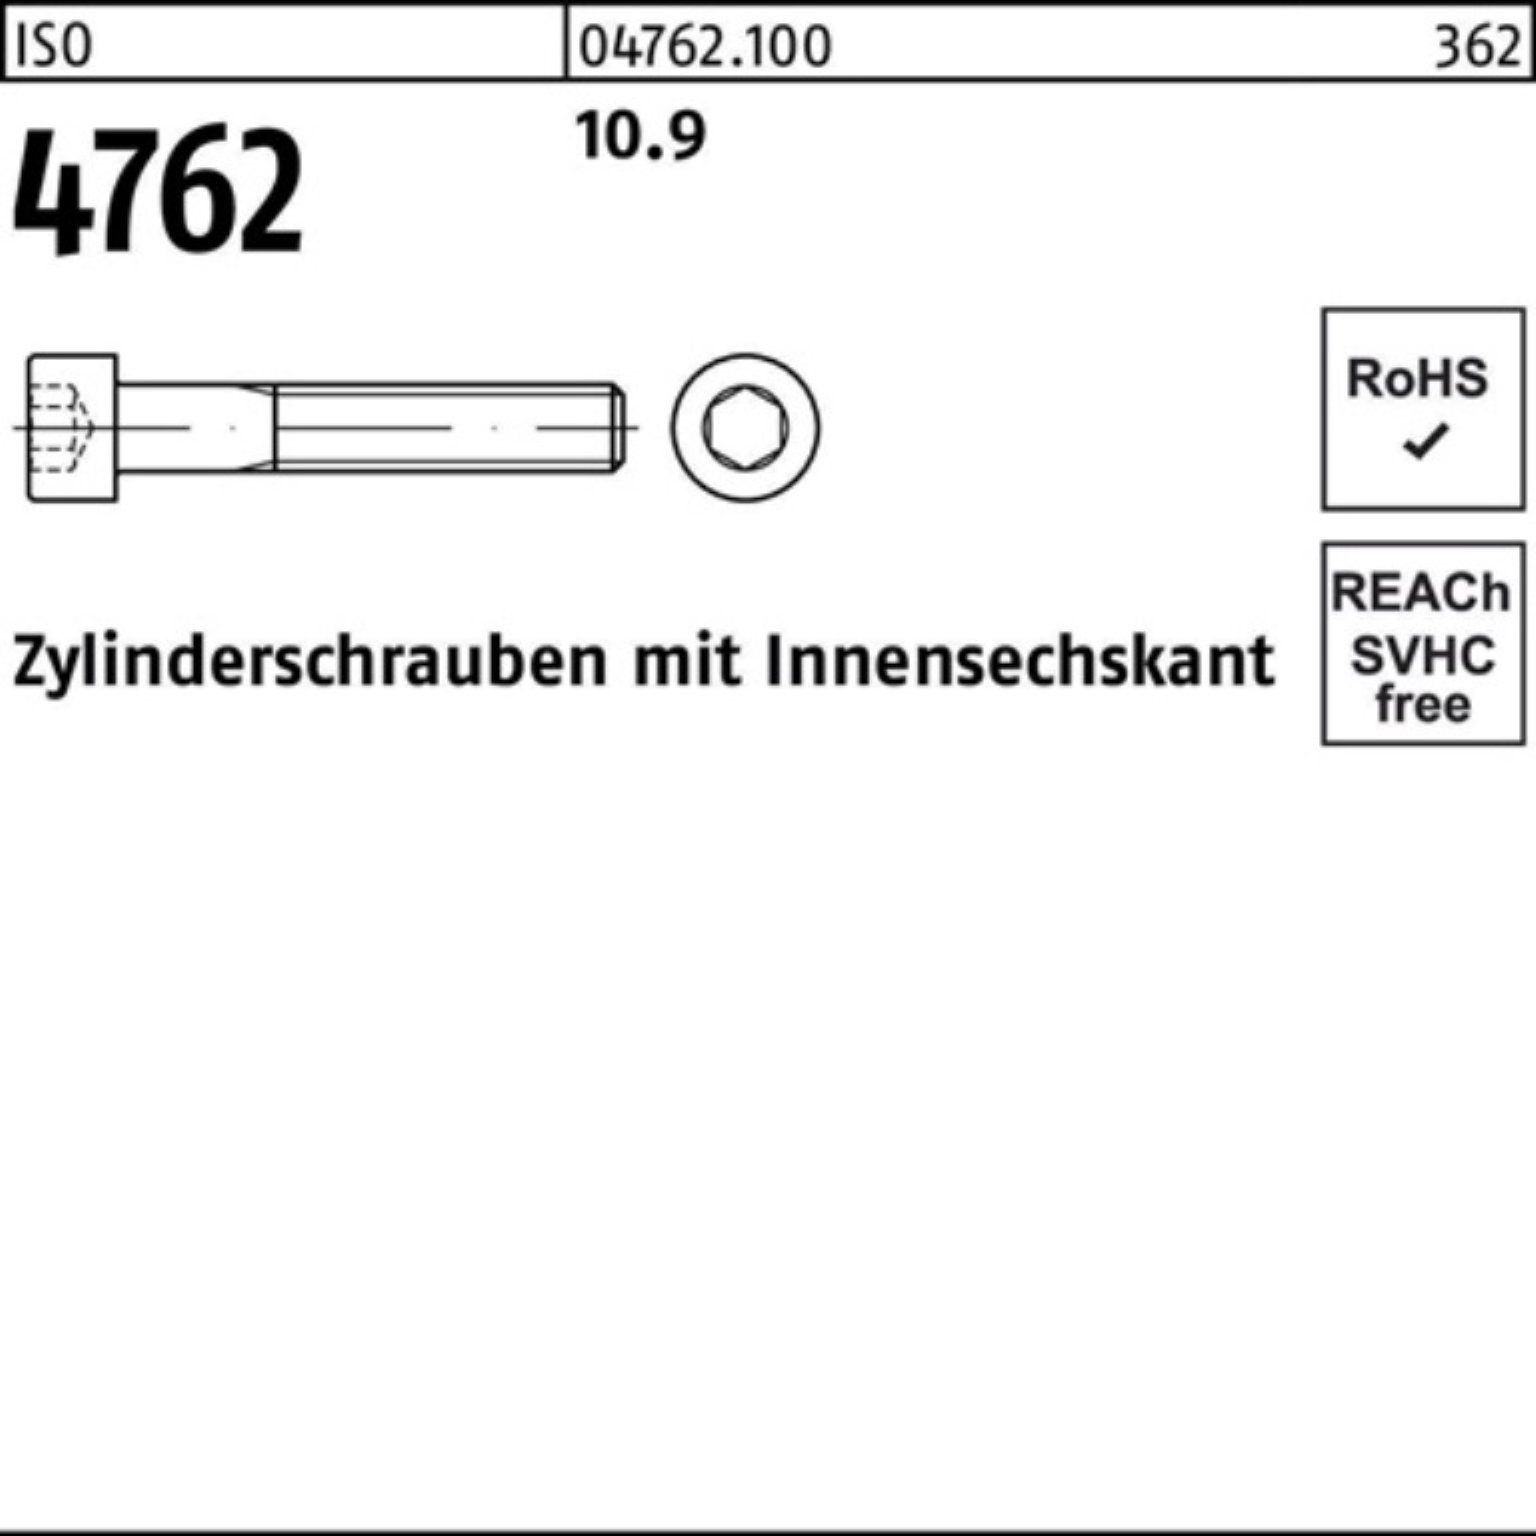 100er Zylinderschraube 4762 Zylinderschraube Reyher Innen-6kt M14x 10.9 50 ISO Stück 60 Pack